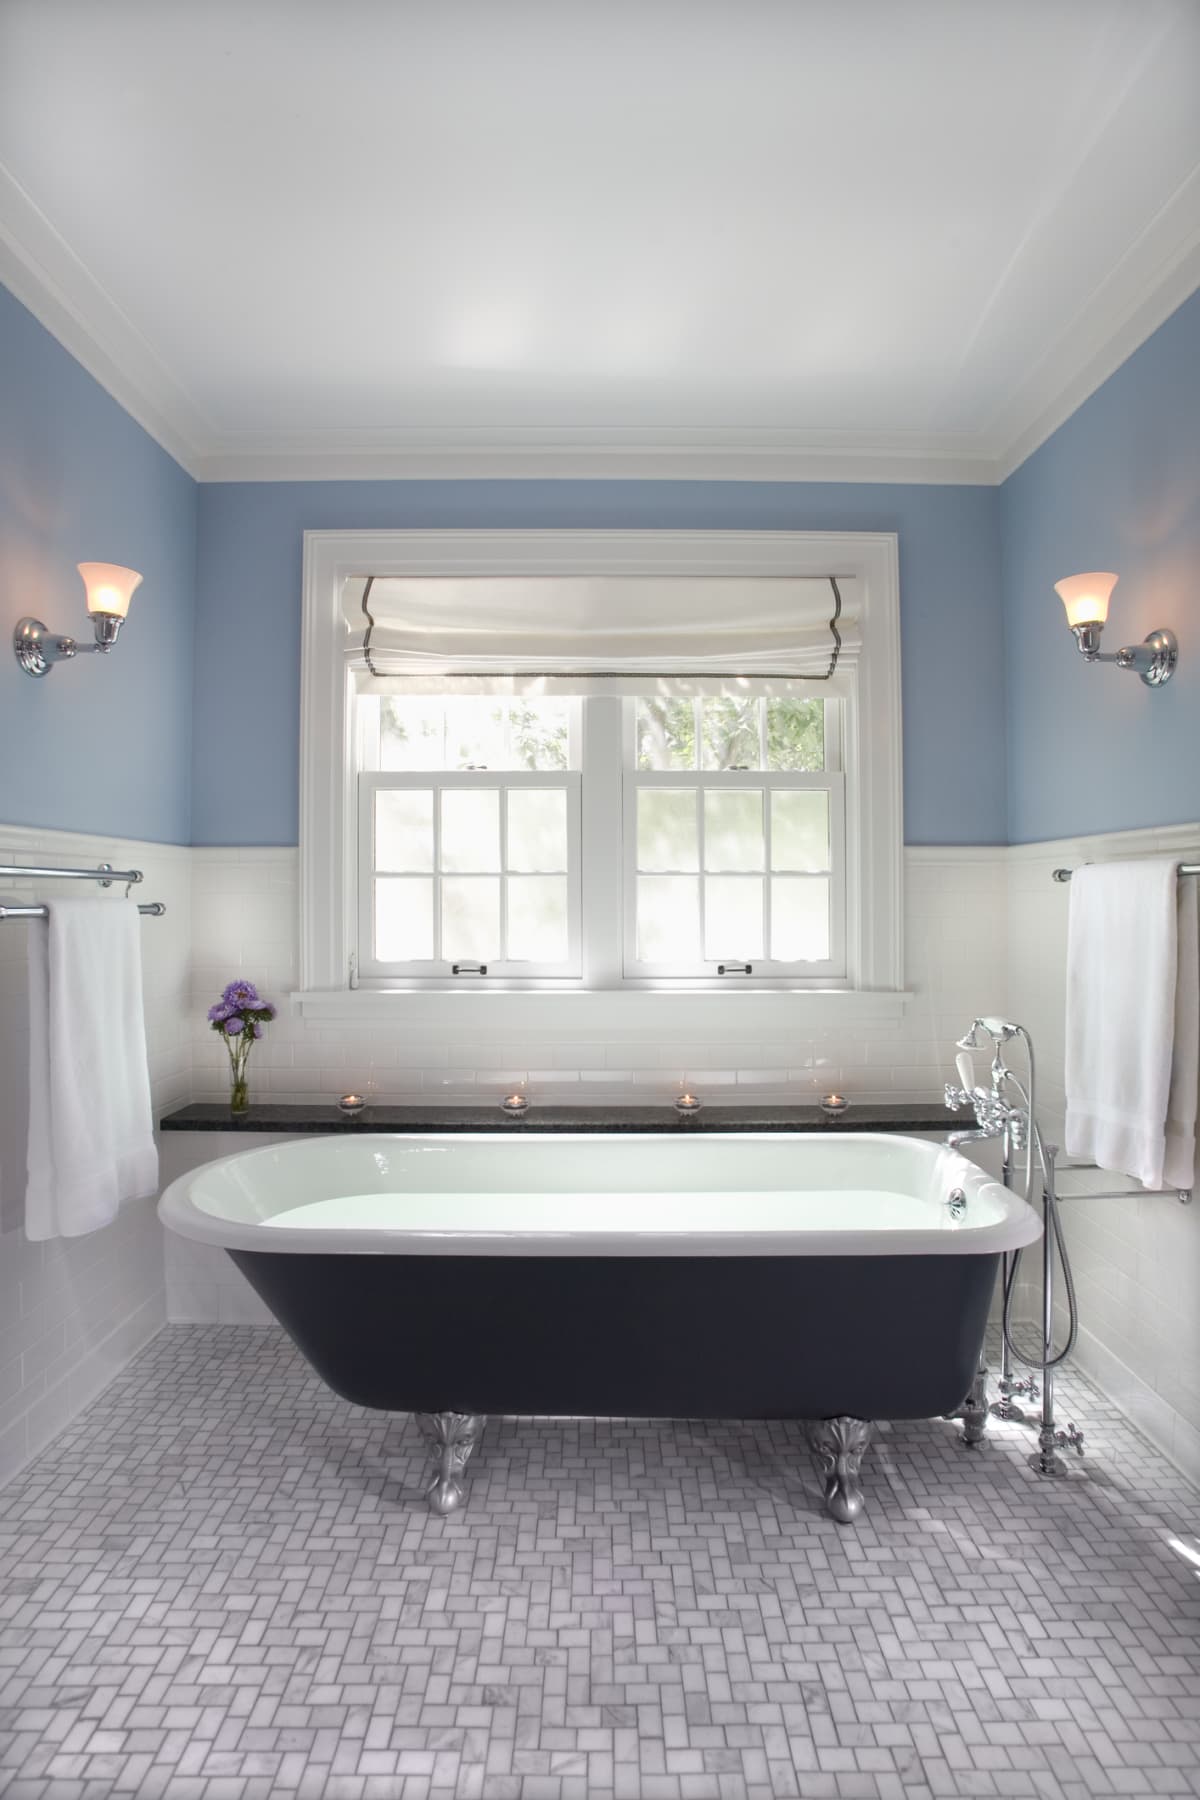 Clawfoot tub in blue bathroom